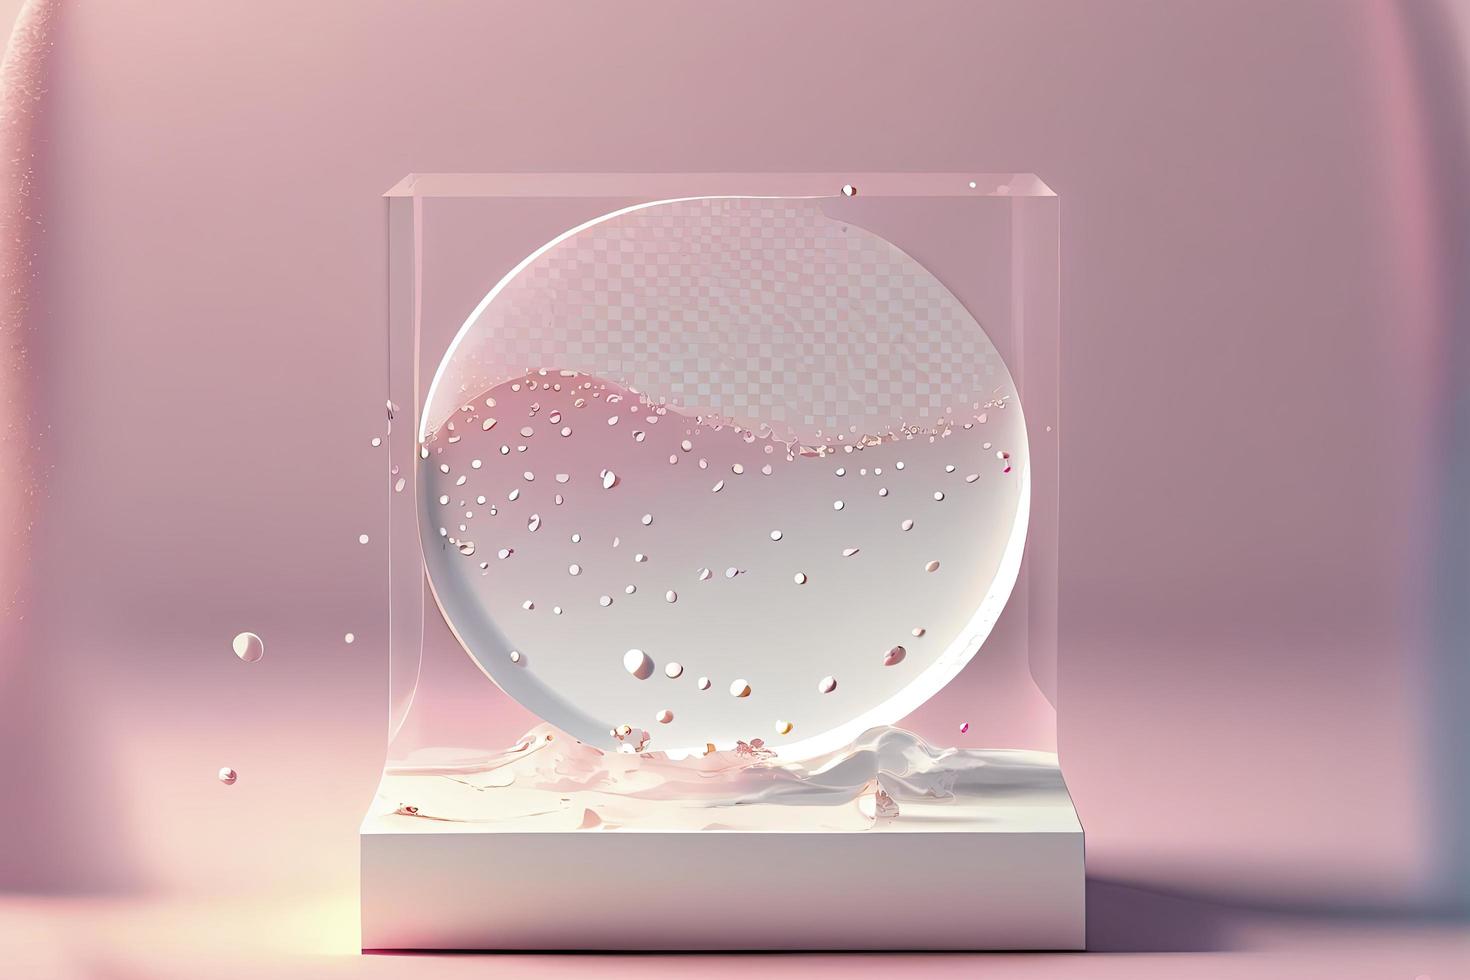 podio de círculo blanco vacío sobre textura de agua tranquila rosa transparente con salpicaduras foto